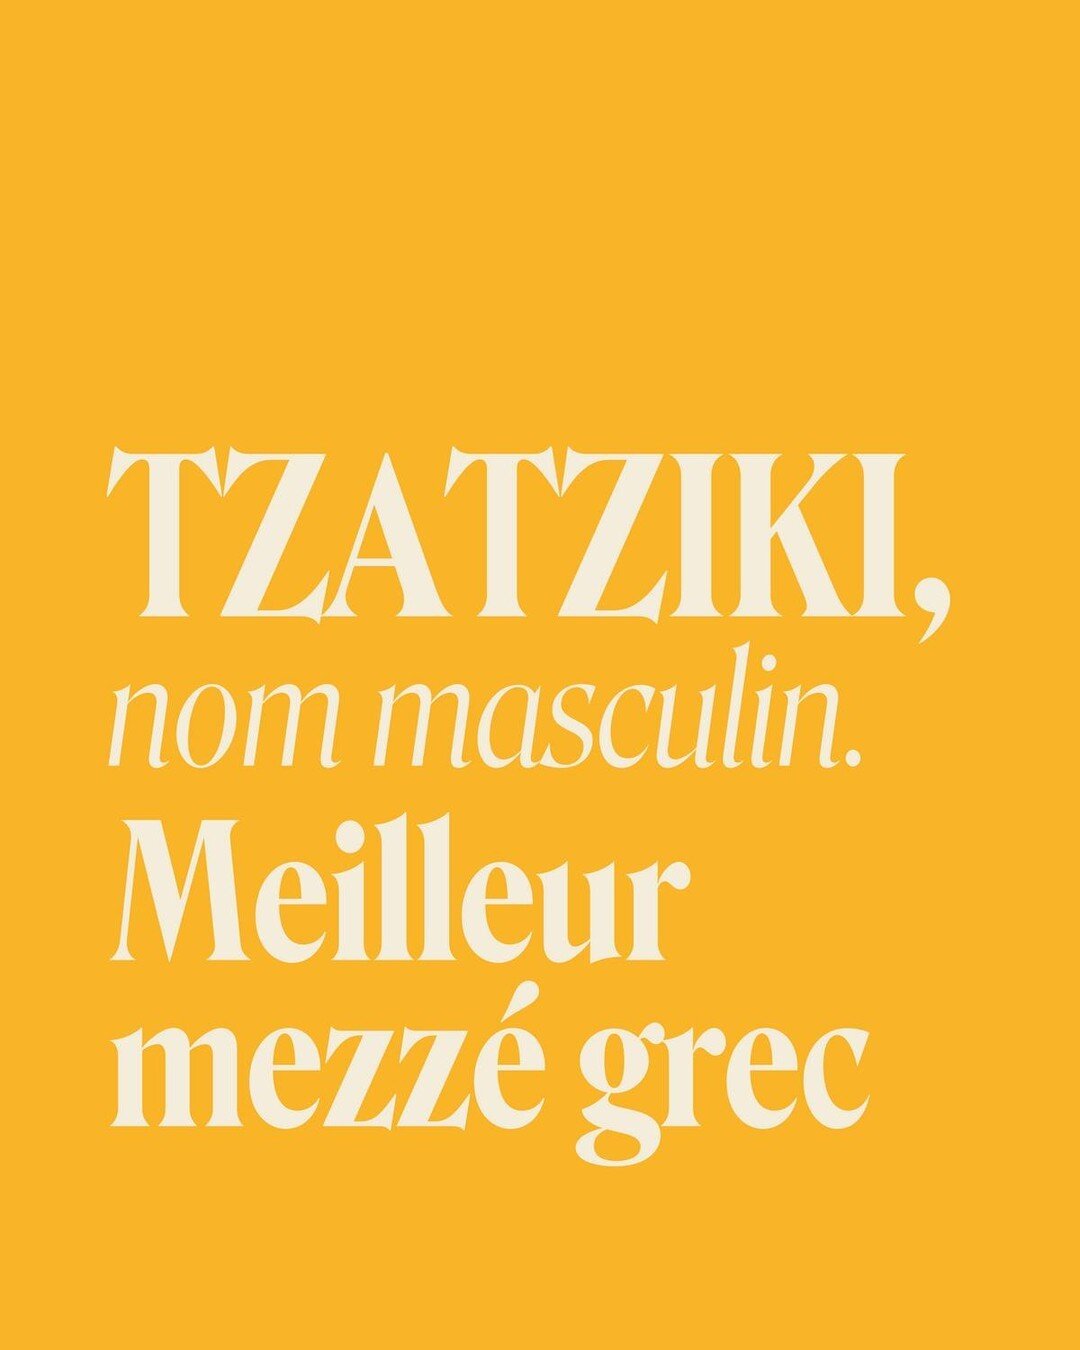 Tzatziki offert pour tout le monde !!! ⤵️

Rendez-vous dans l'un de nos 7 restaurants parisien d&egrave;s ce midi : pour tout menu achet&eacute;, un tzatziki et son pain pita offerts !! 💙

Offre valable jusqu'au mercredi 17 mai inclu, dans tous les 